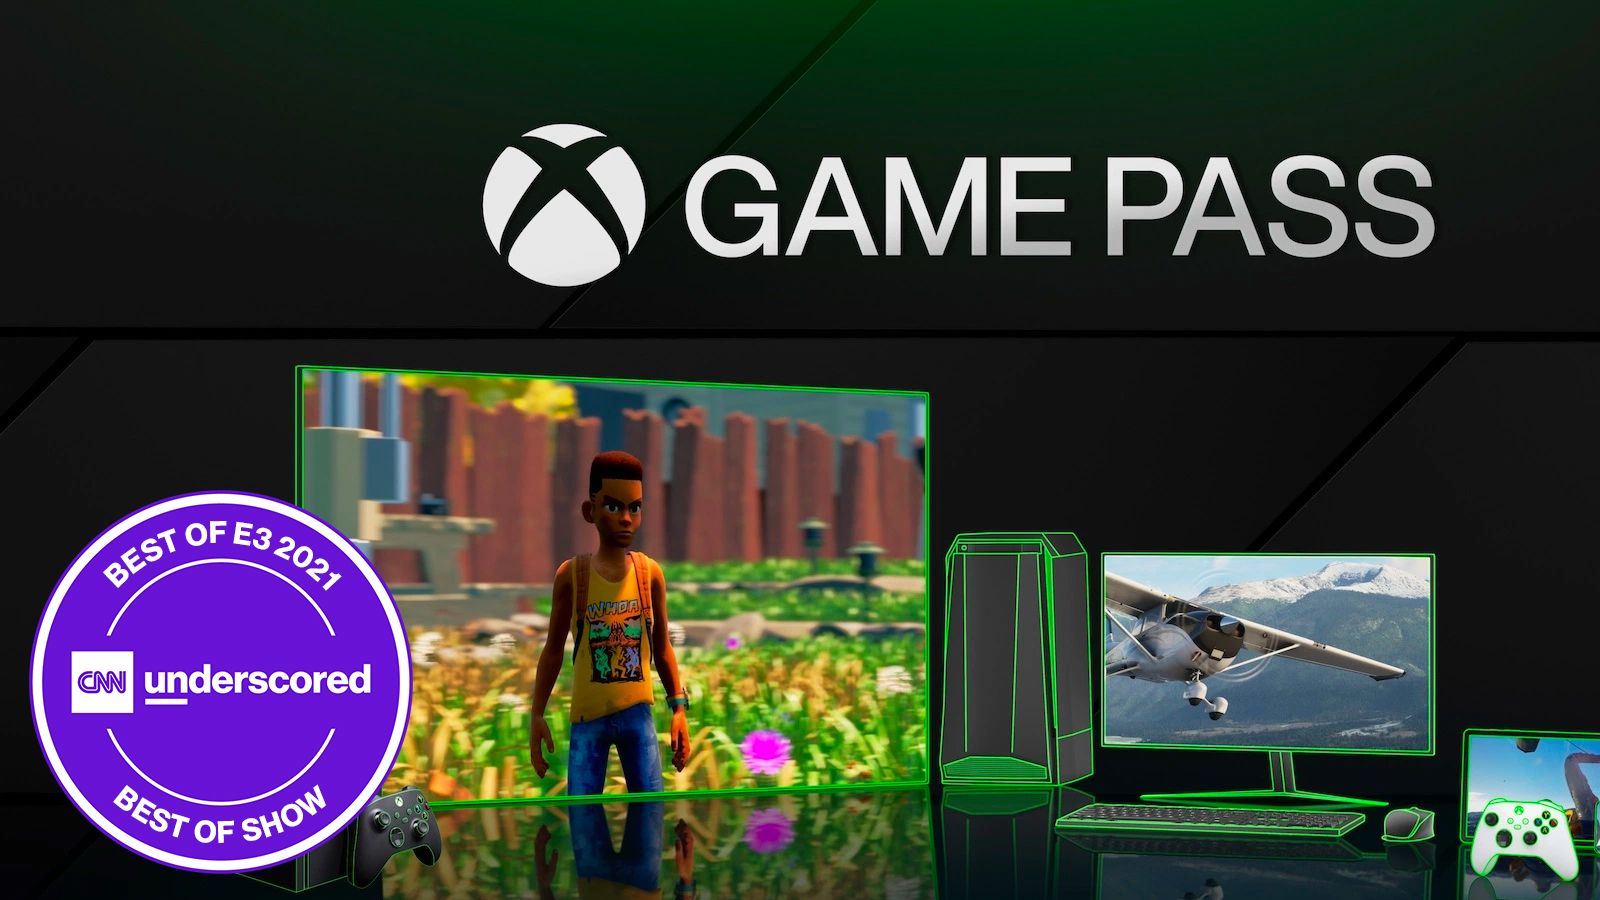 E3 2021 : Comment les Xbox Series comptent trouver leur place face